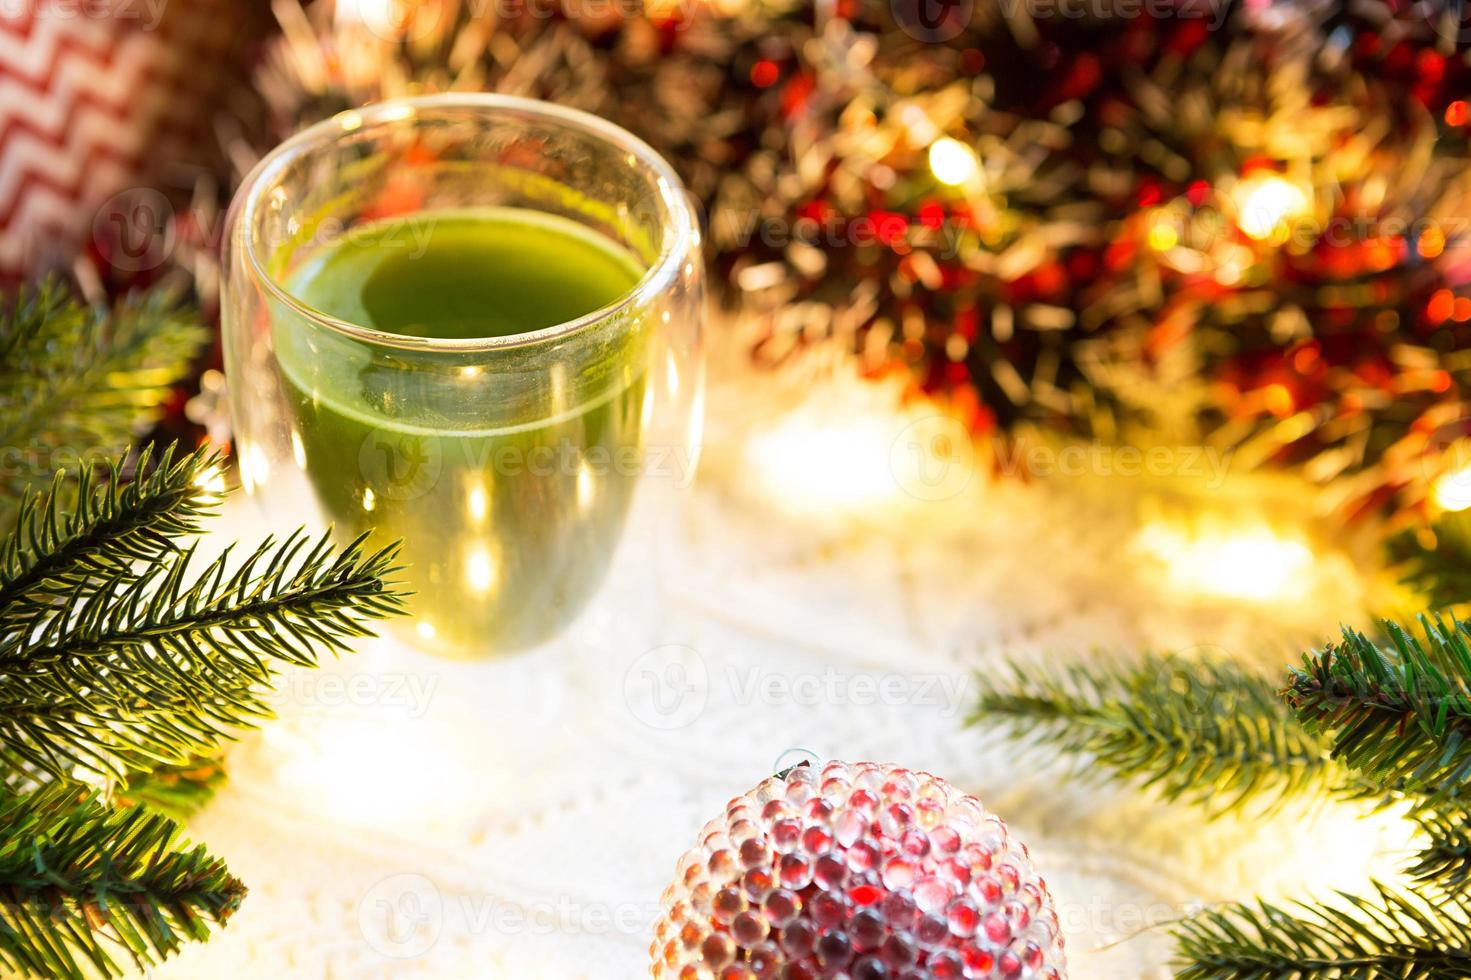 vaso transparente de vidrio de doble pared con té matcha japonés en la mesa con decoración navideña. atmósfera de año nuevo, guirnaldas y oropel, rama de abeto, acogedora manta de punto, pelota, servilleta a rayas foto